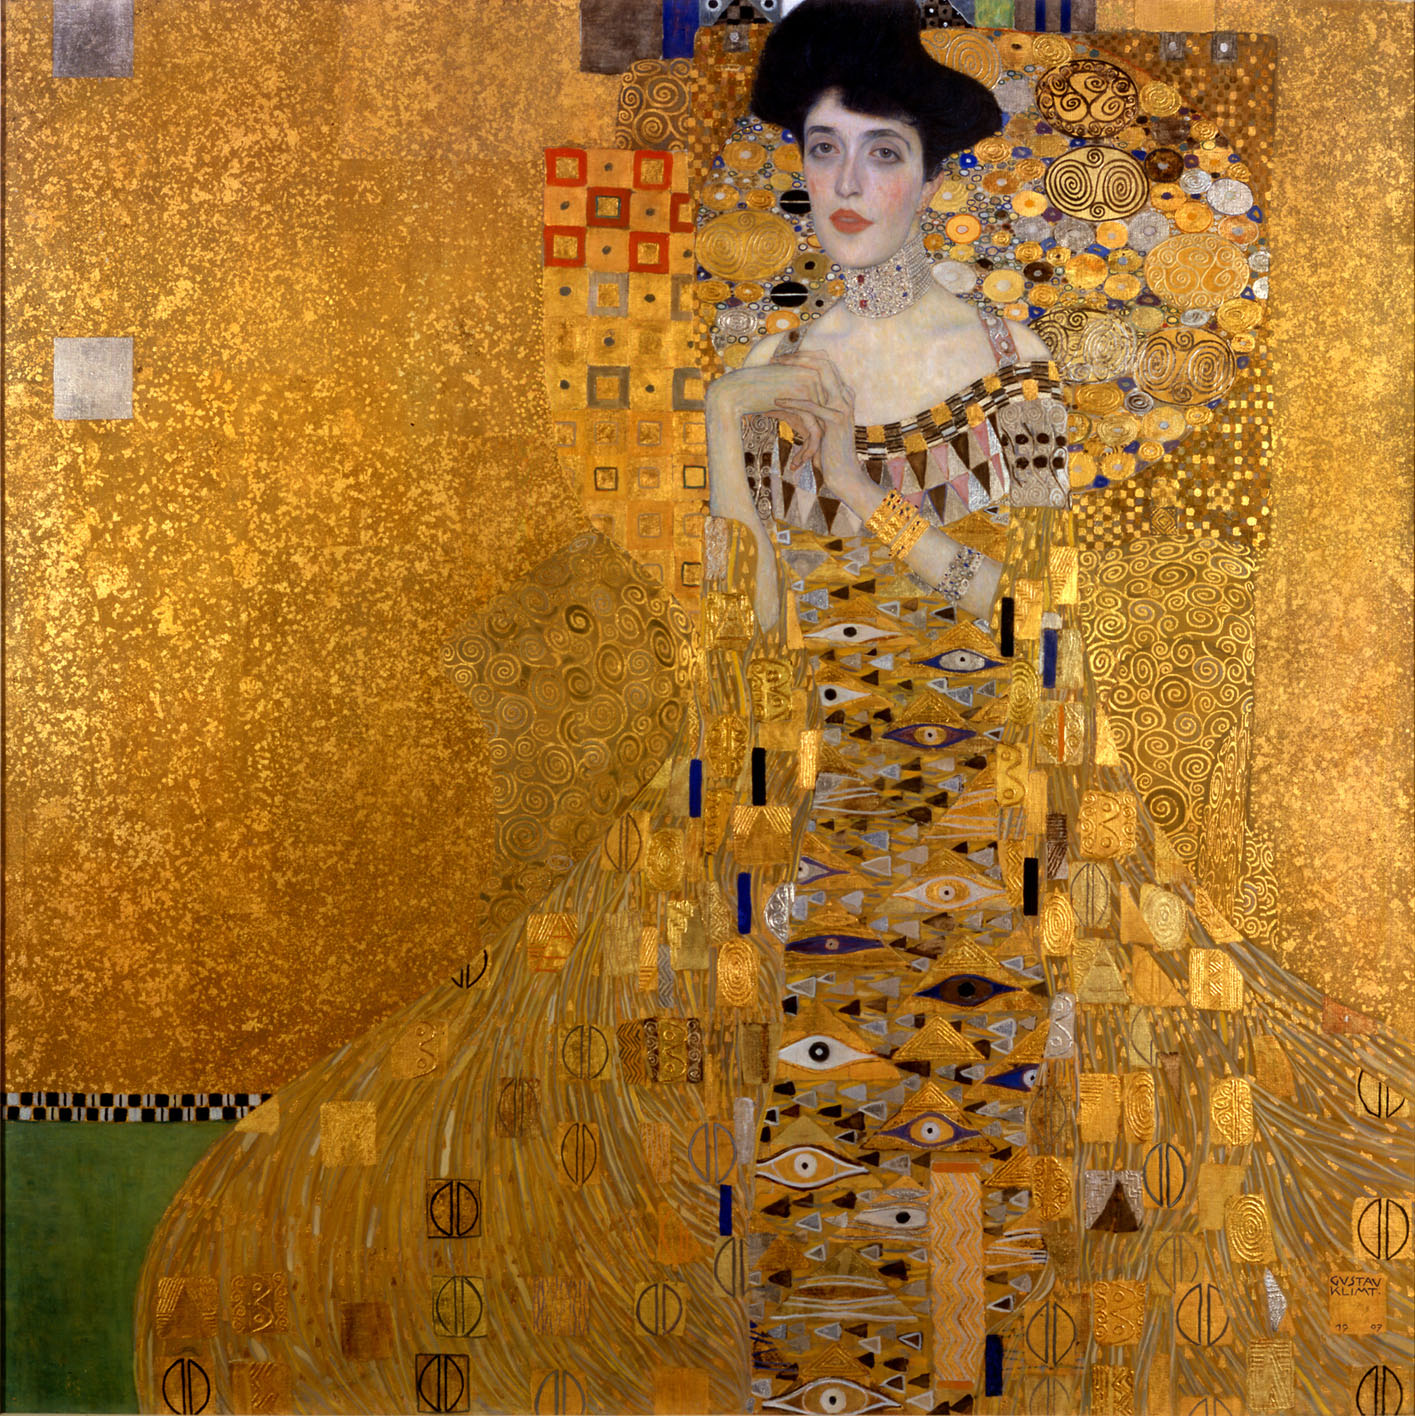 Chân dung Adele Bloch-Bauer I (1903-1907) – Gustav Klimt Kích thước: 138 cm × 138 cm Chất liệu: Sơn dầu, vàng lá, bạc trên vải